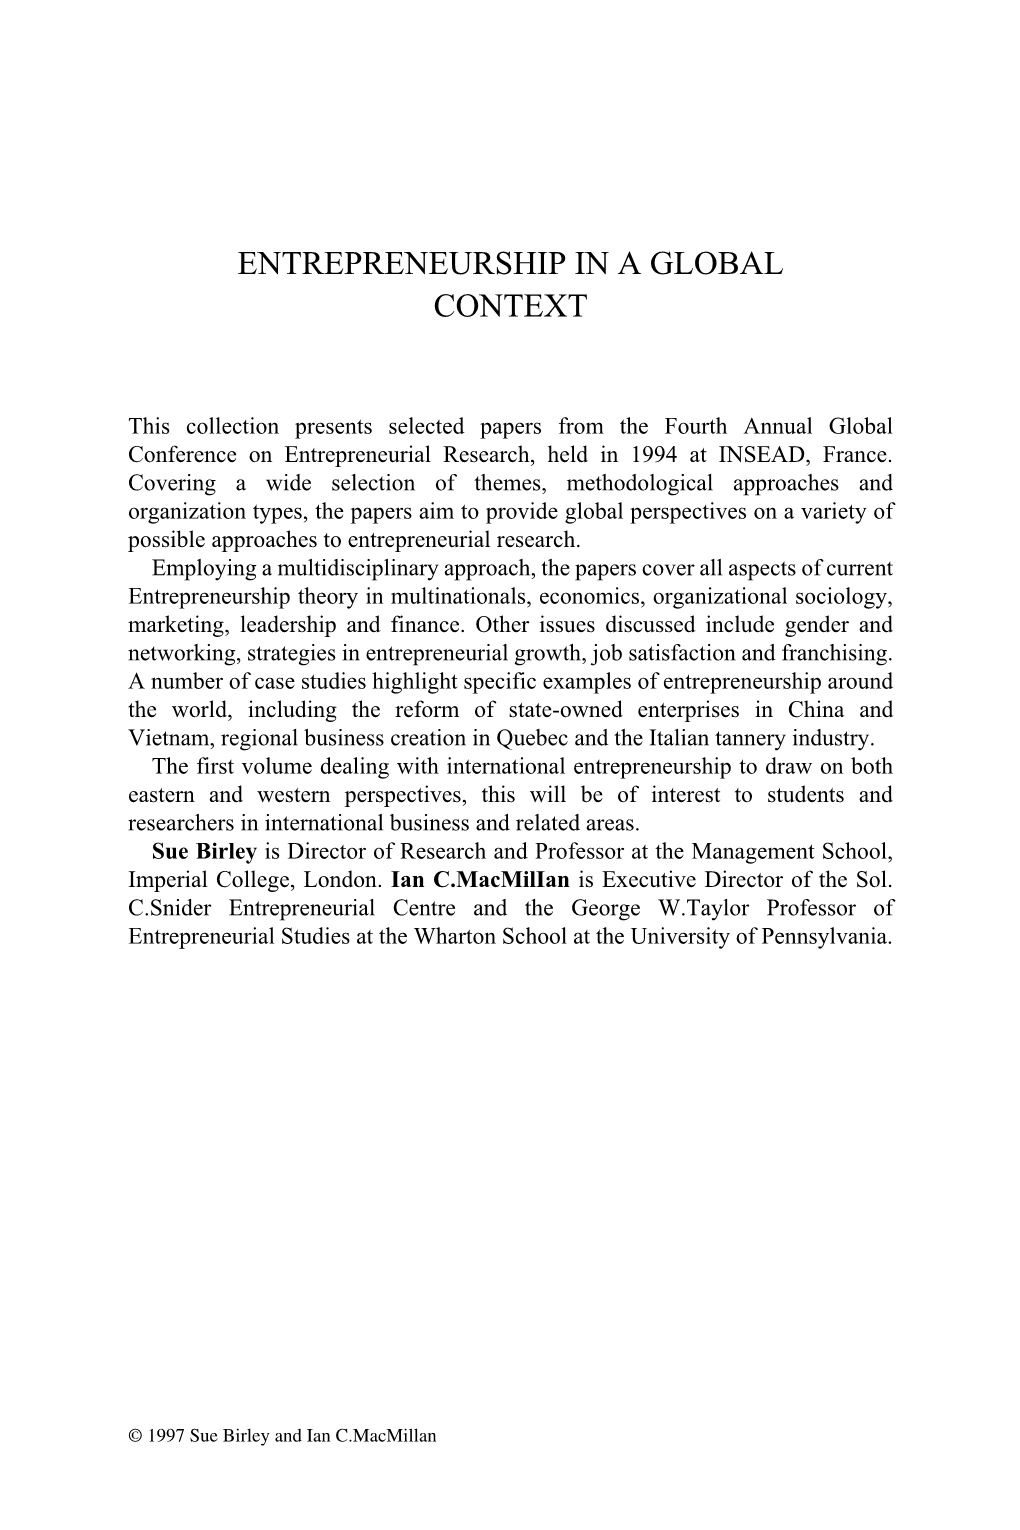 Entrepreneurship in a Global Context